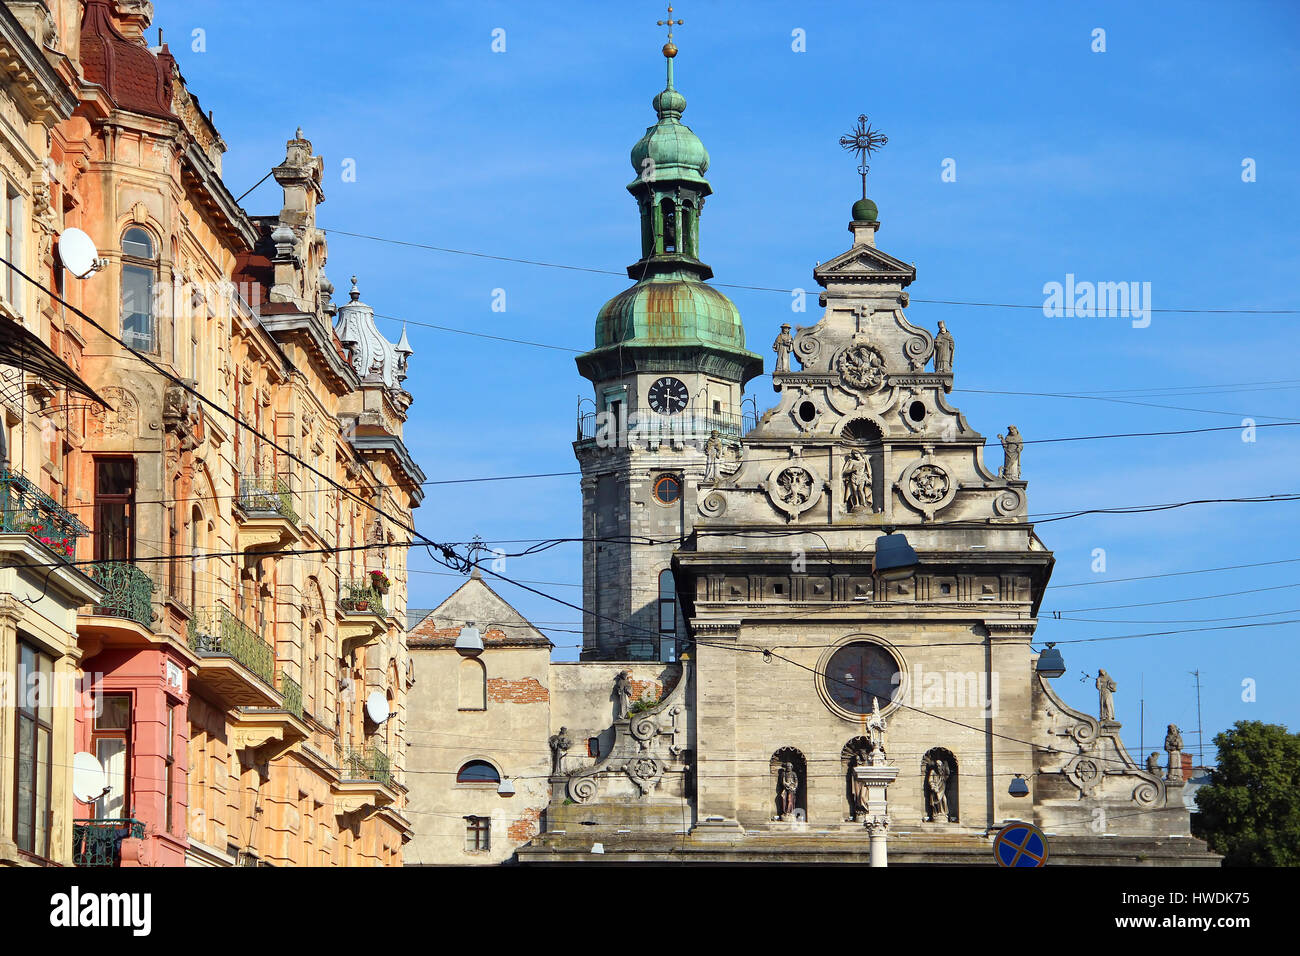 La vieille ville de Lviv et l'Eglise grecque-catholique de Saint André (Bernardine Church), Ukraine Banque D'Images